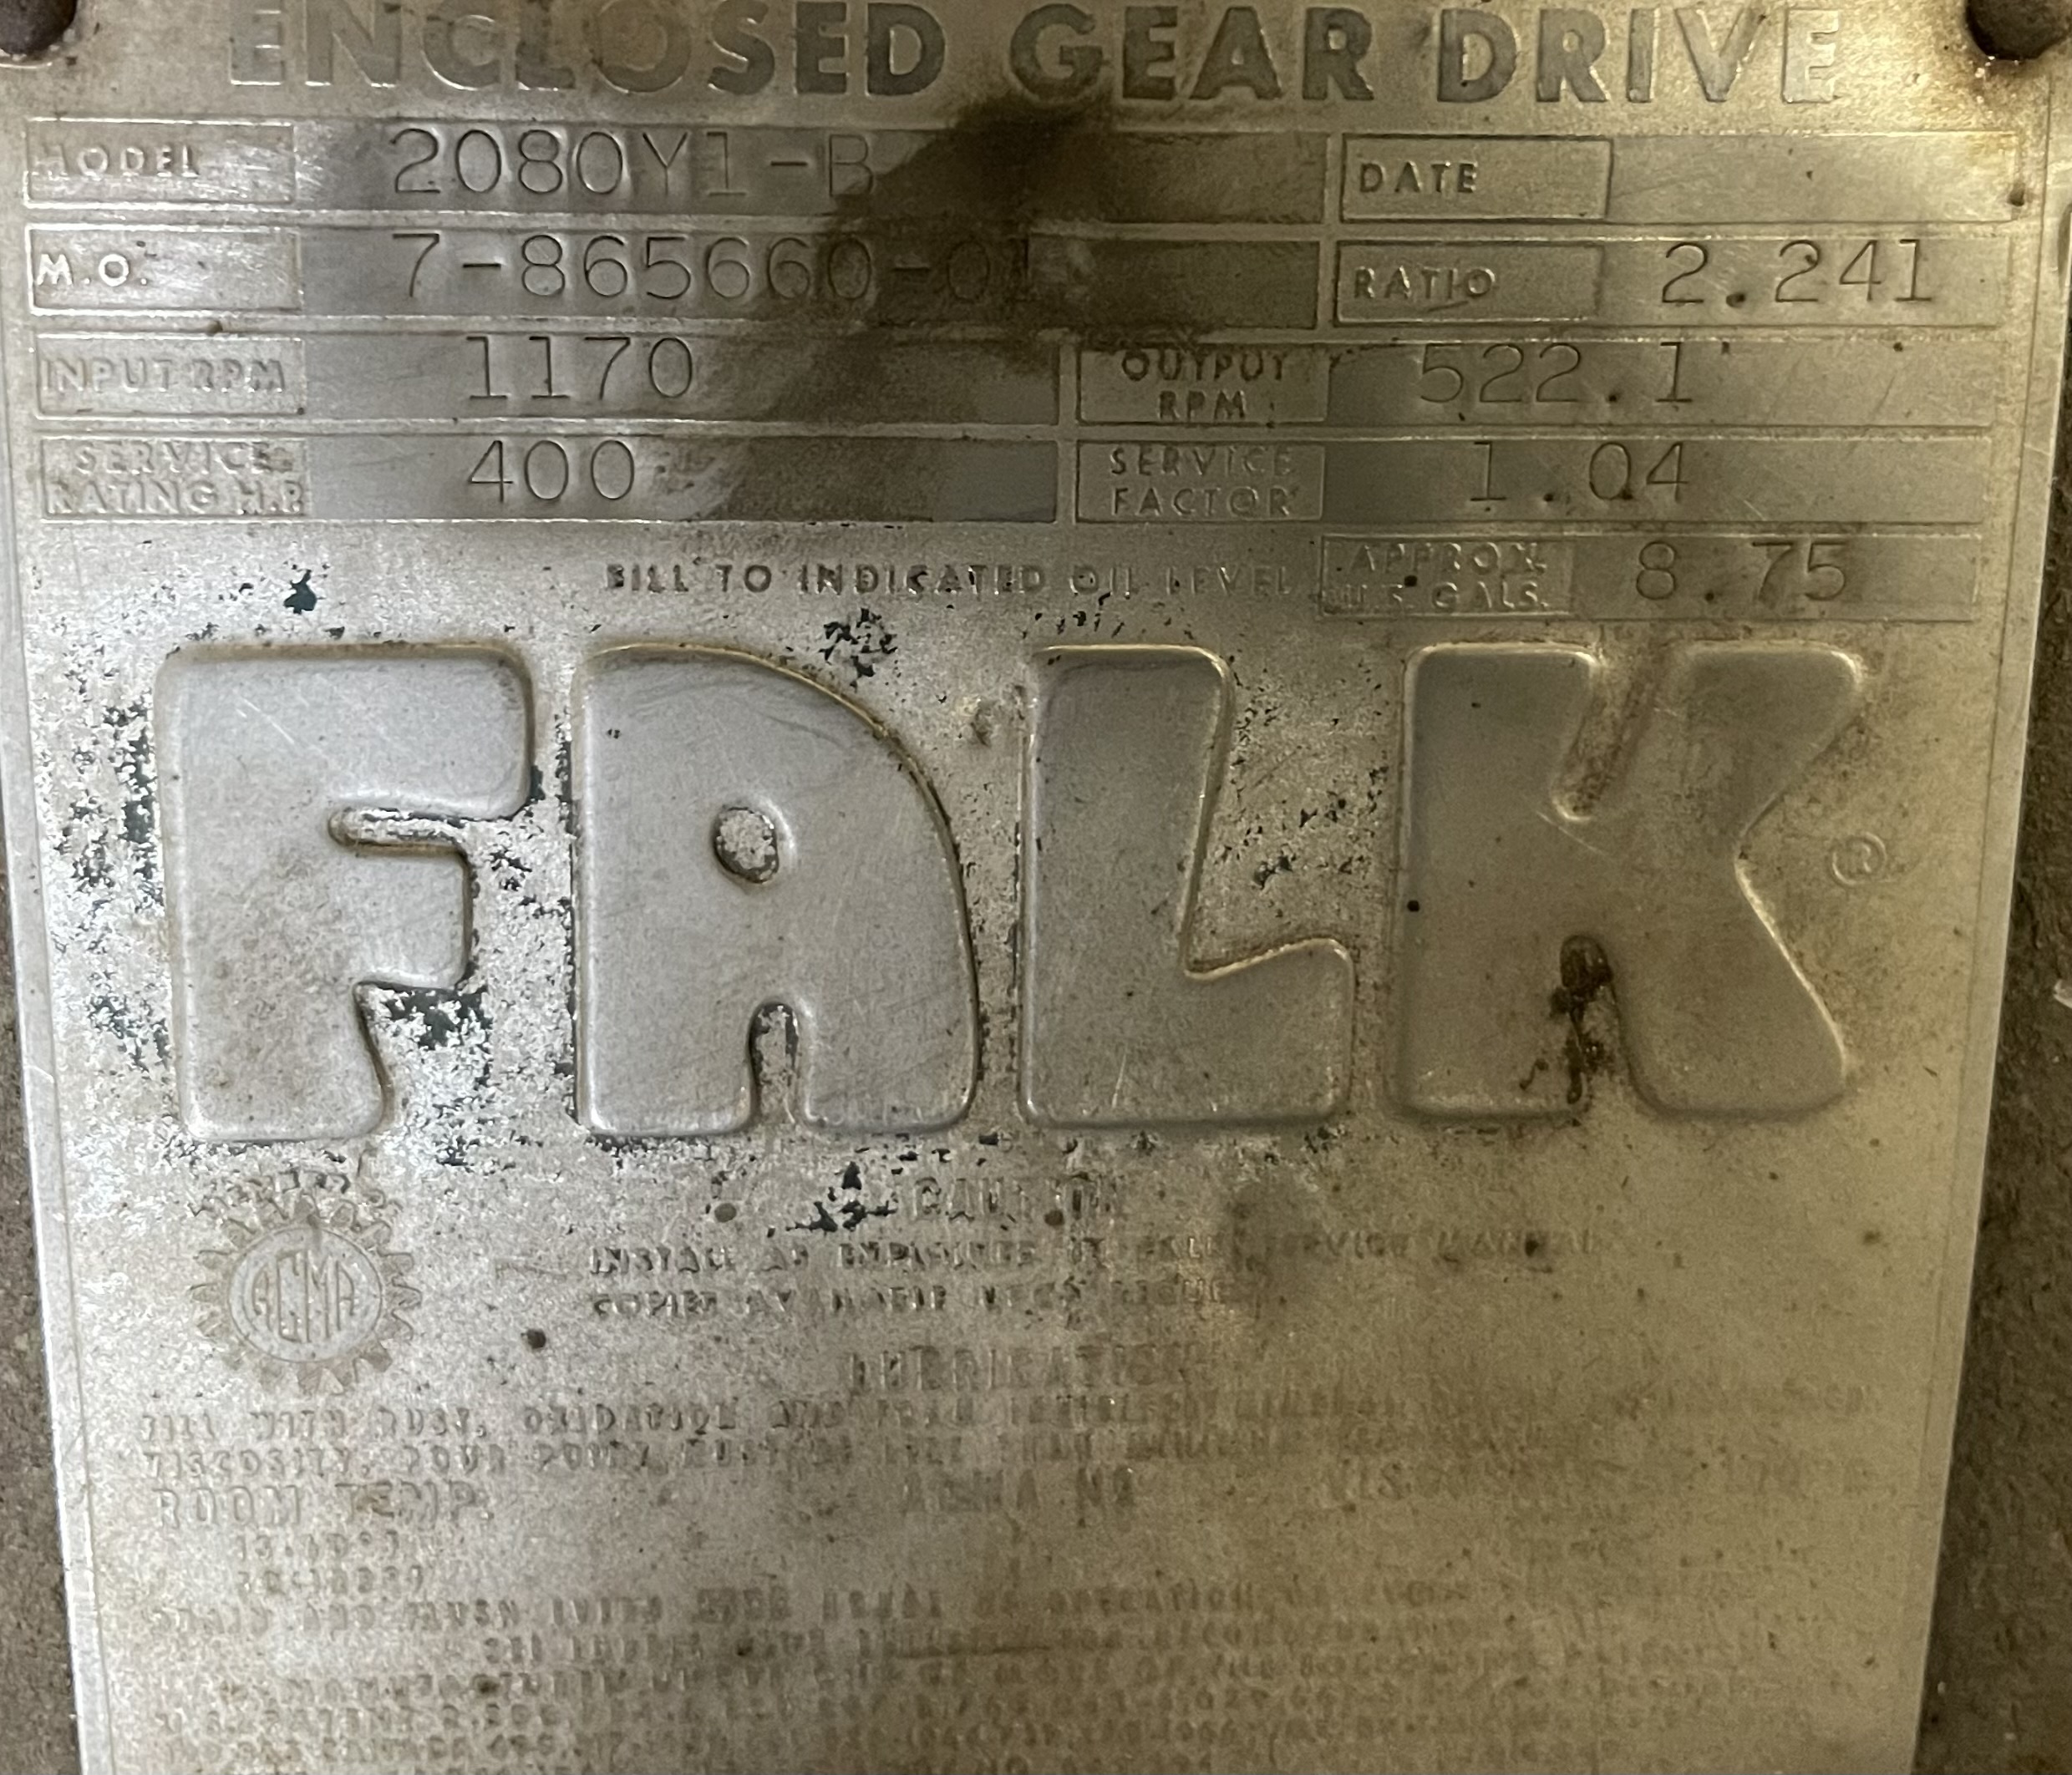 Falk Enclosed Gear Drive Model 2080Y1-B